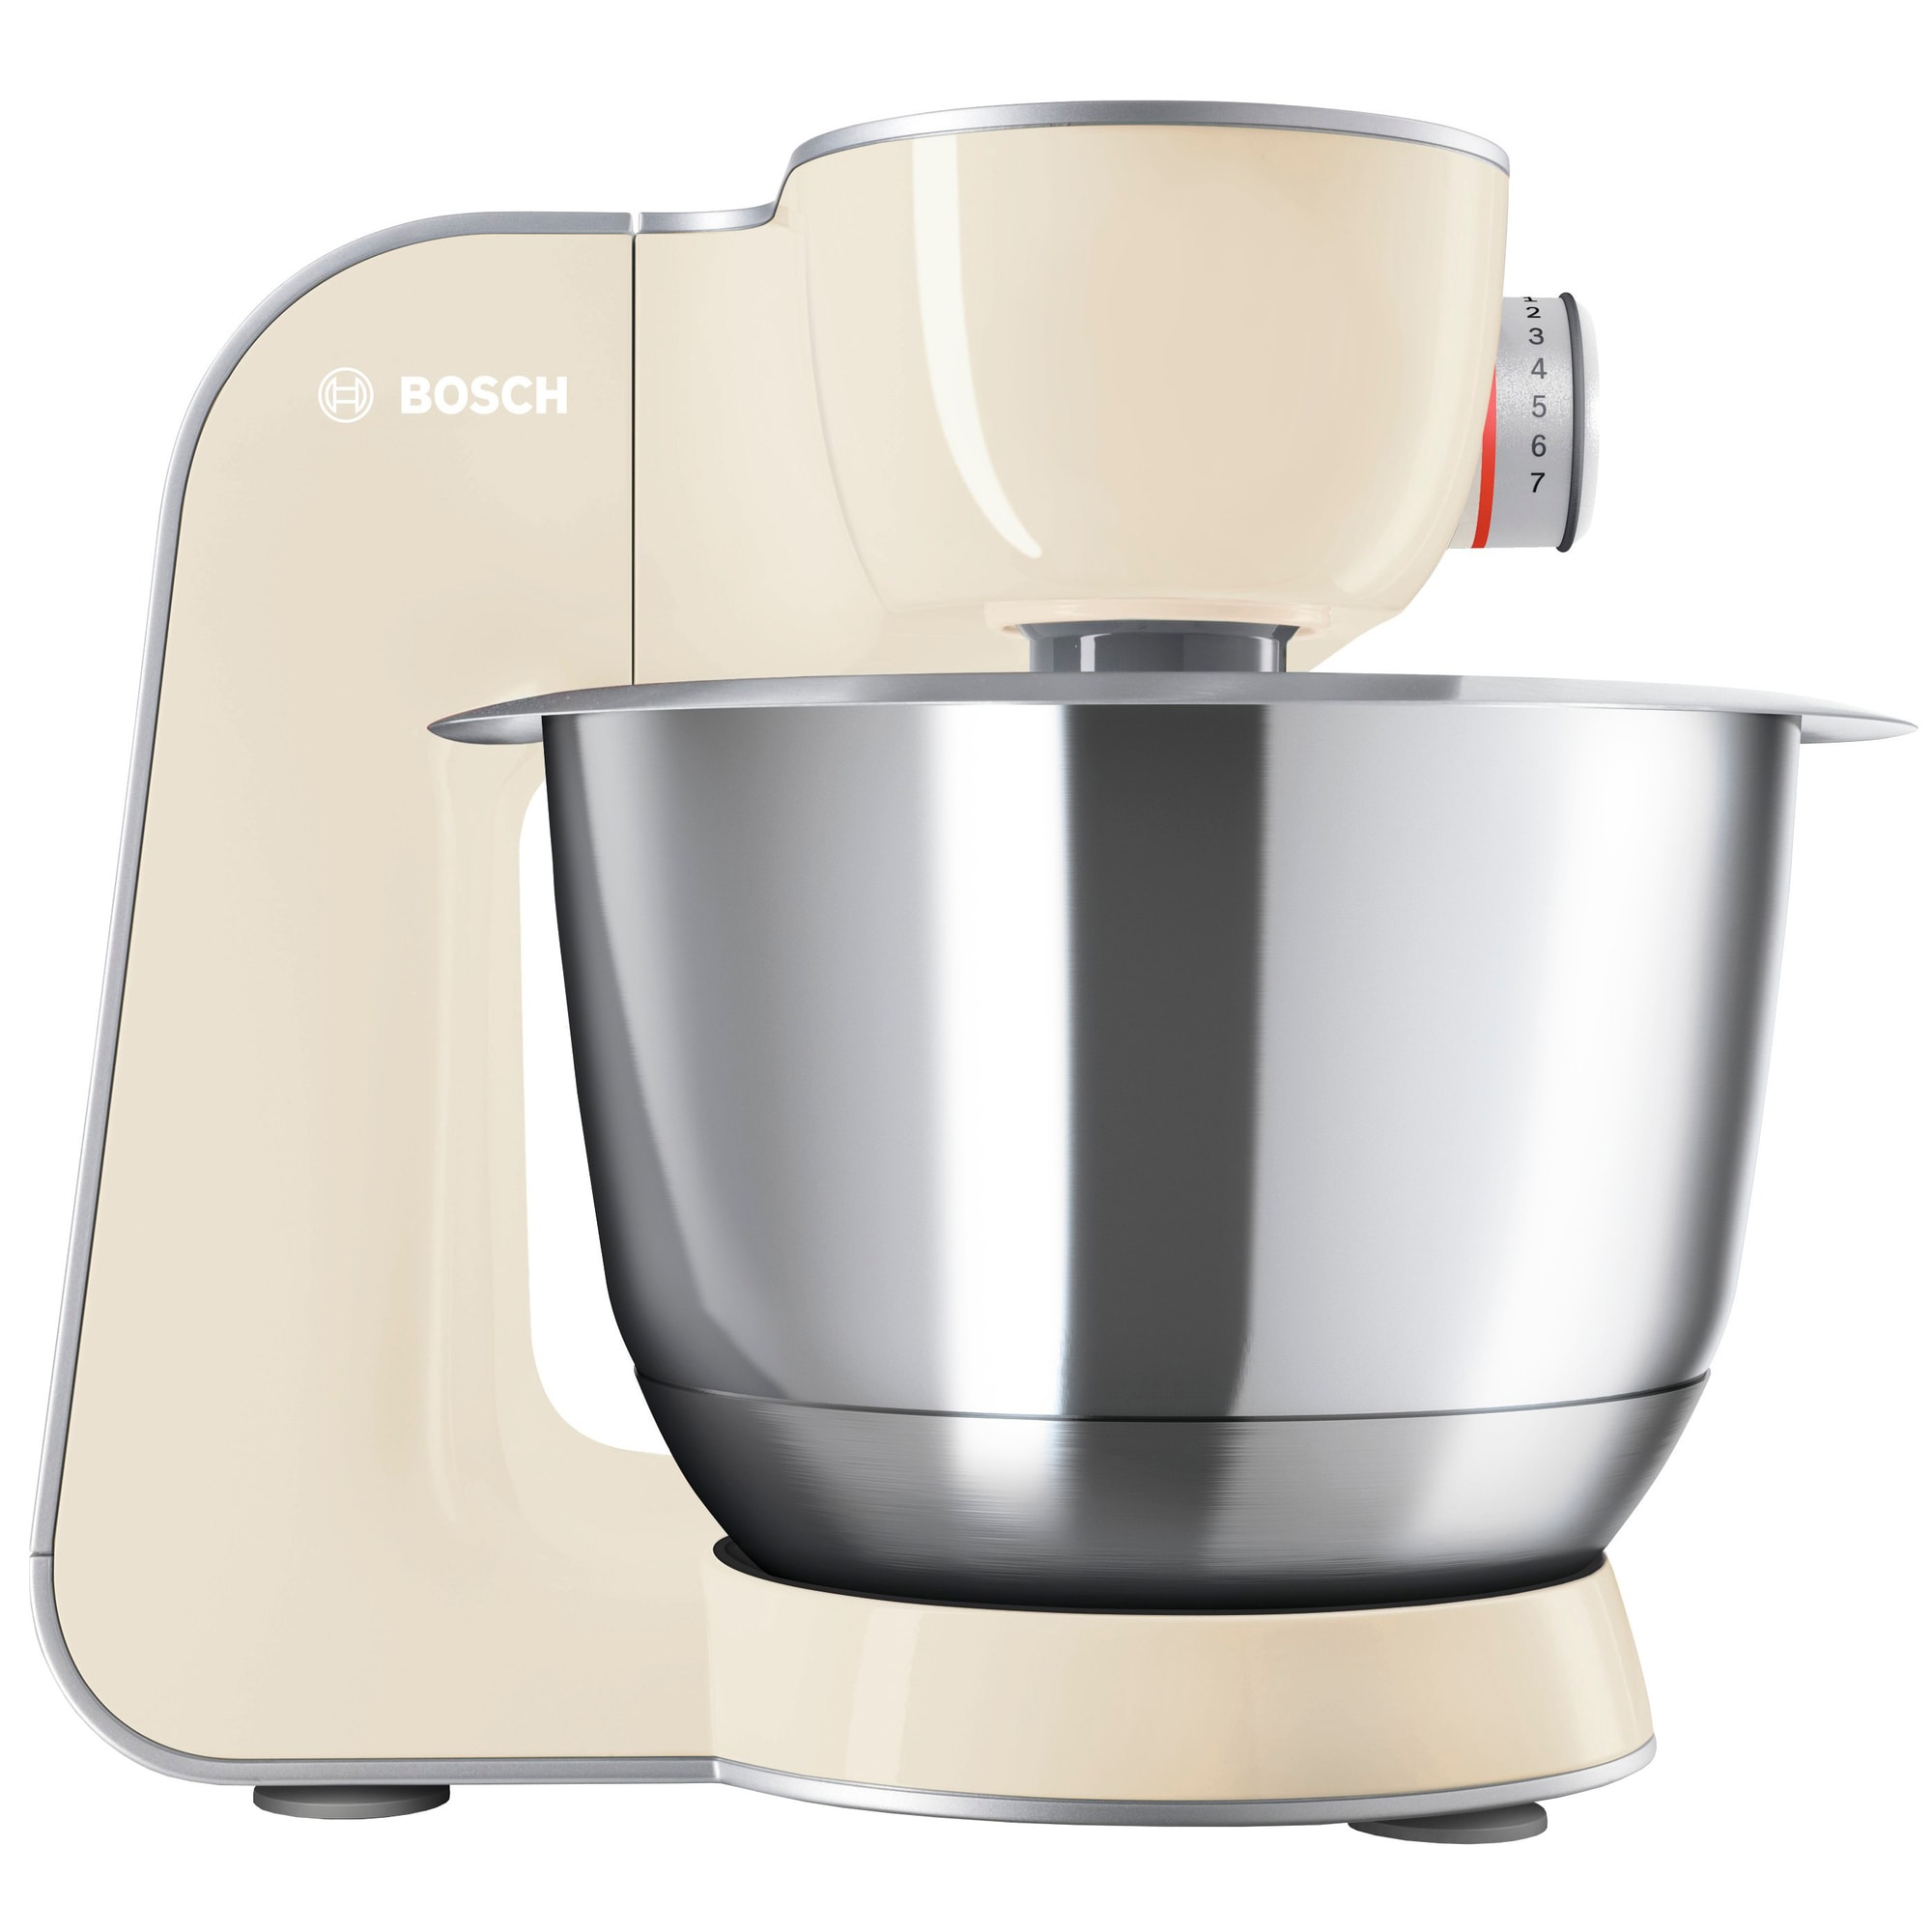 Bosch MUM5 CreationLine kjøkkenmaskin (Vanilje/sølv) - Kjøkkenapparater -  Elkjøp